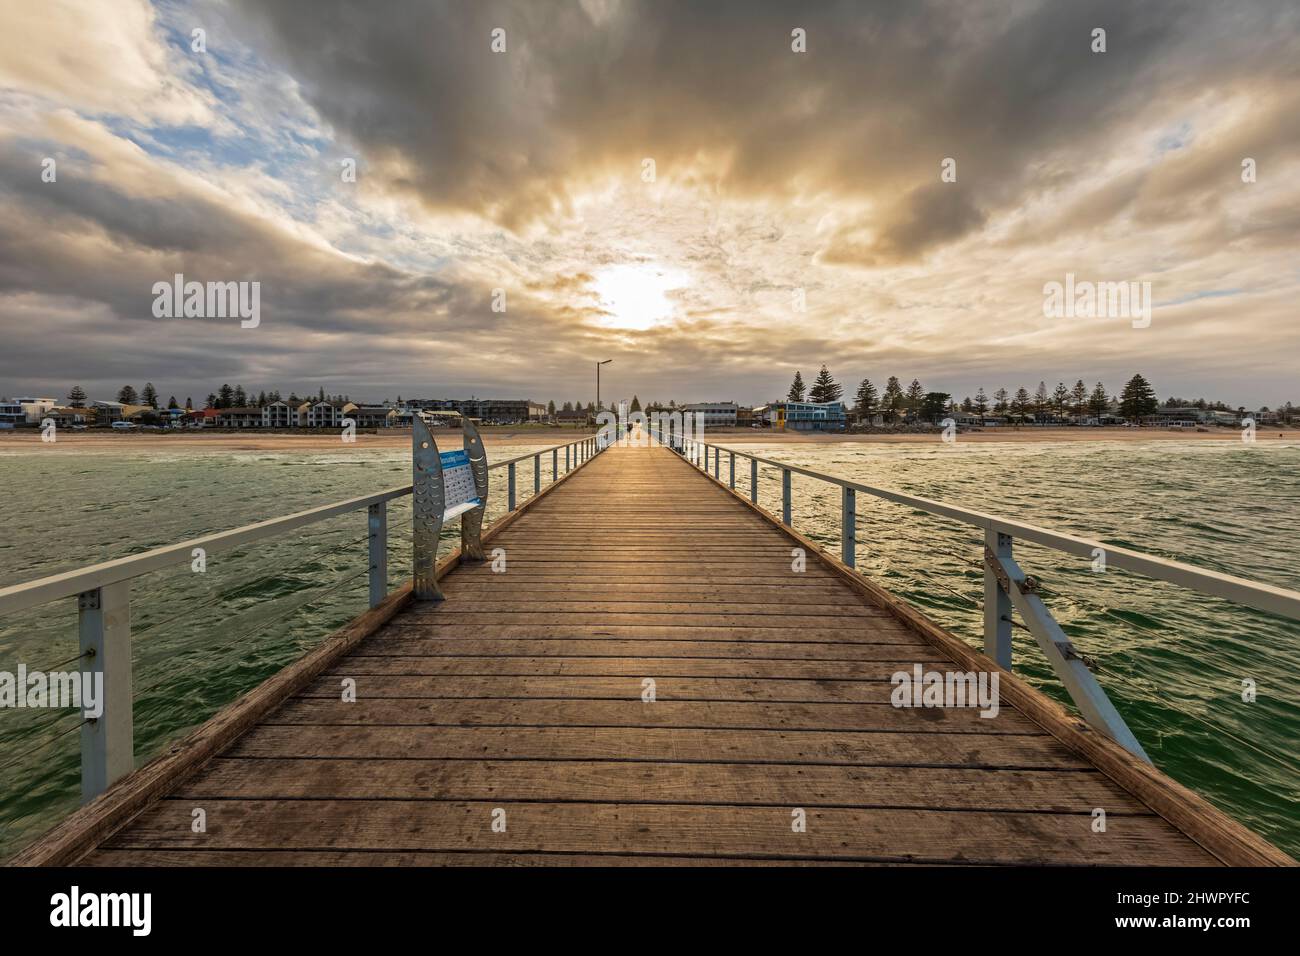 Australien, Südaustralien, Adelaide, Henley Beach Jetty bei bewölktem Sonnenuntergang Stockfoto